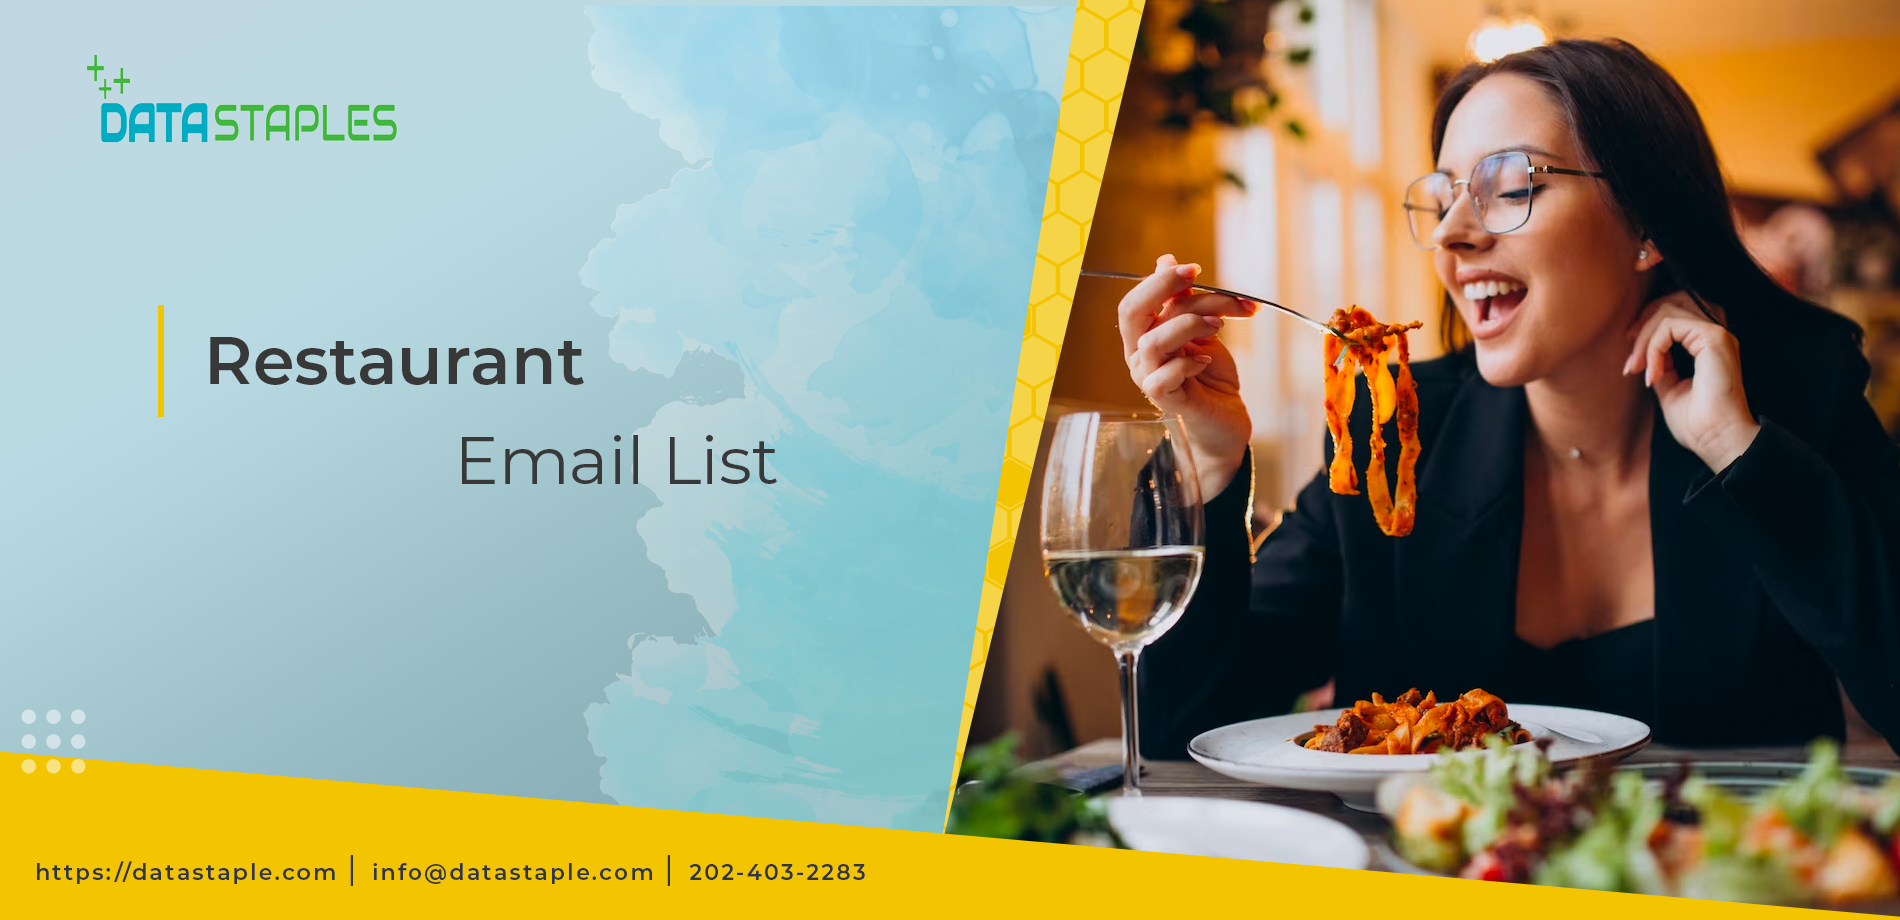 Restaurant Email List | DataStaples